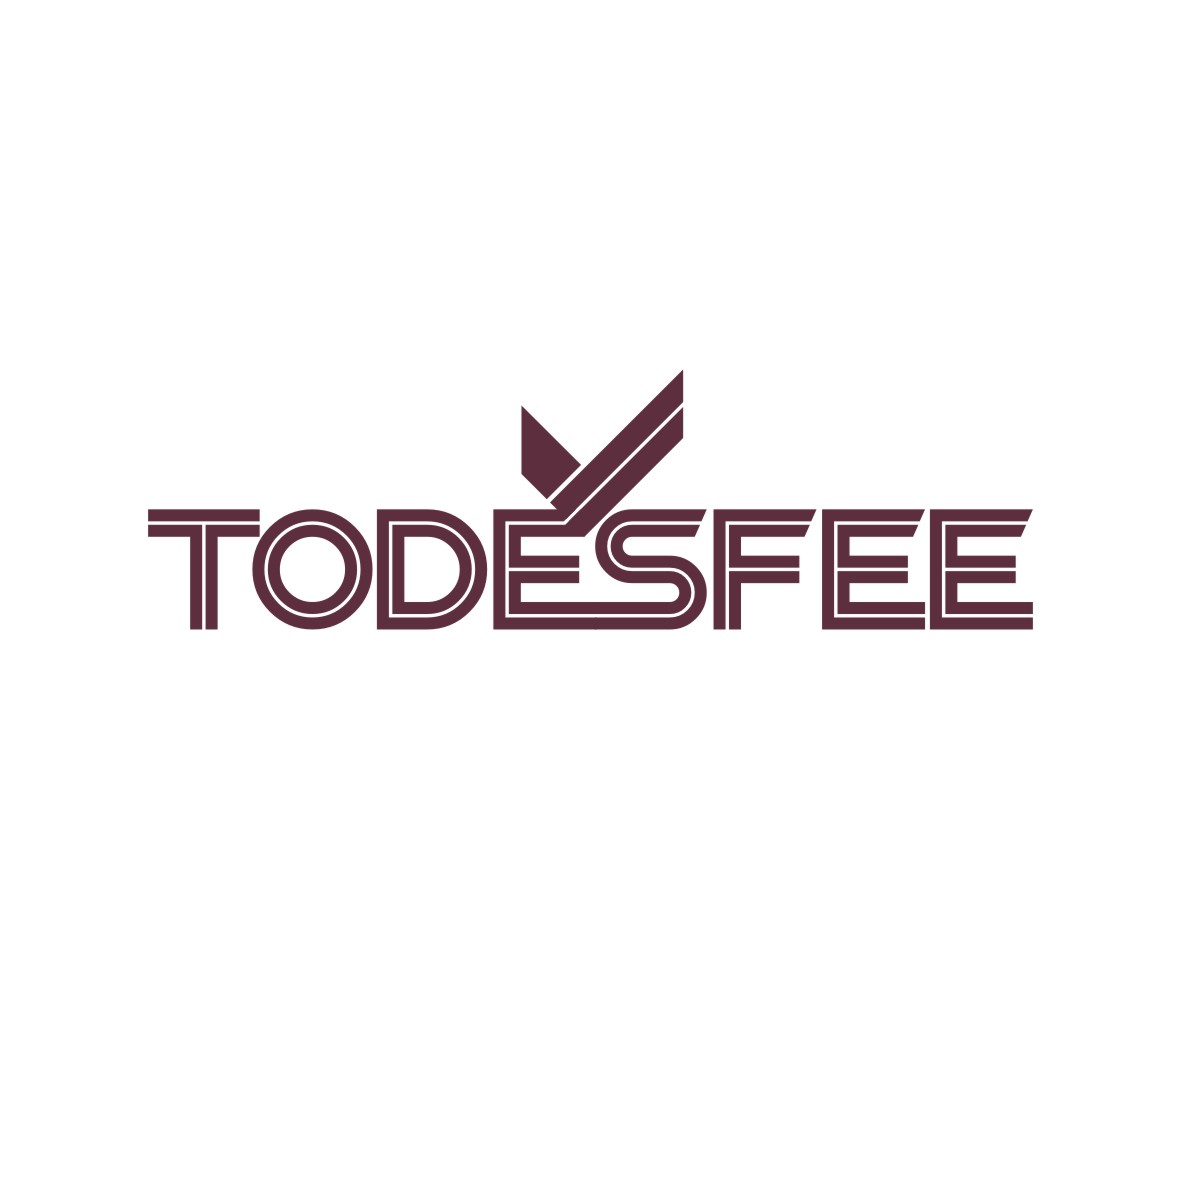 广州品辰文化传播有限公司商标TODESFEE（14类）商标转让流程及费用